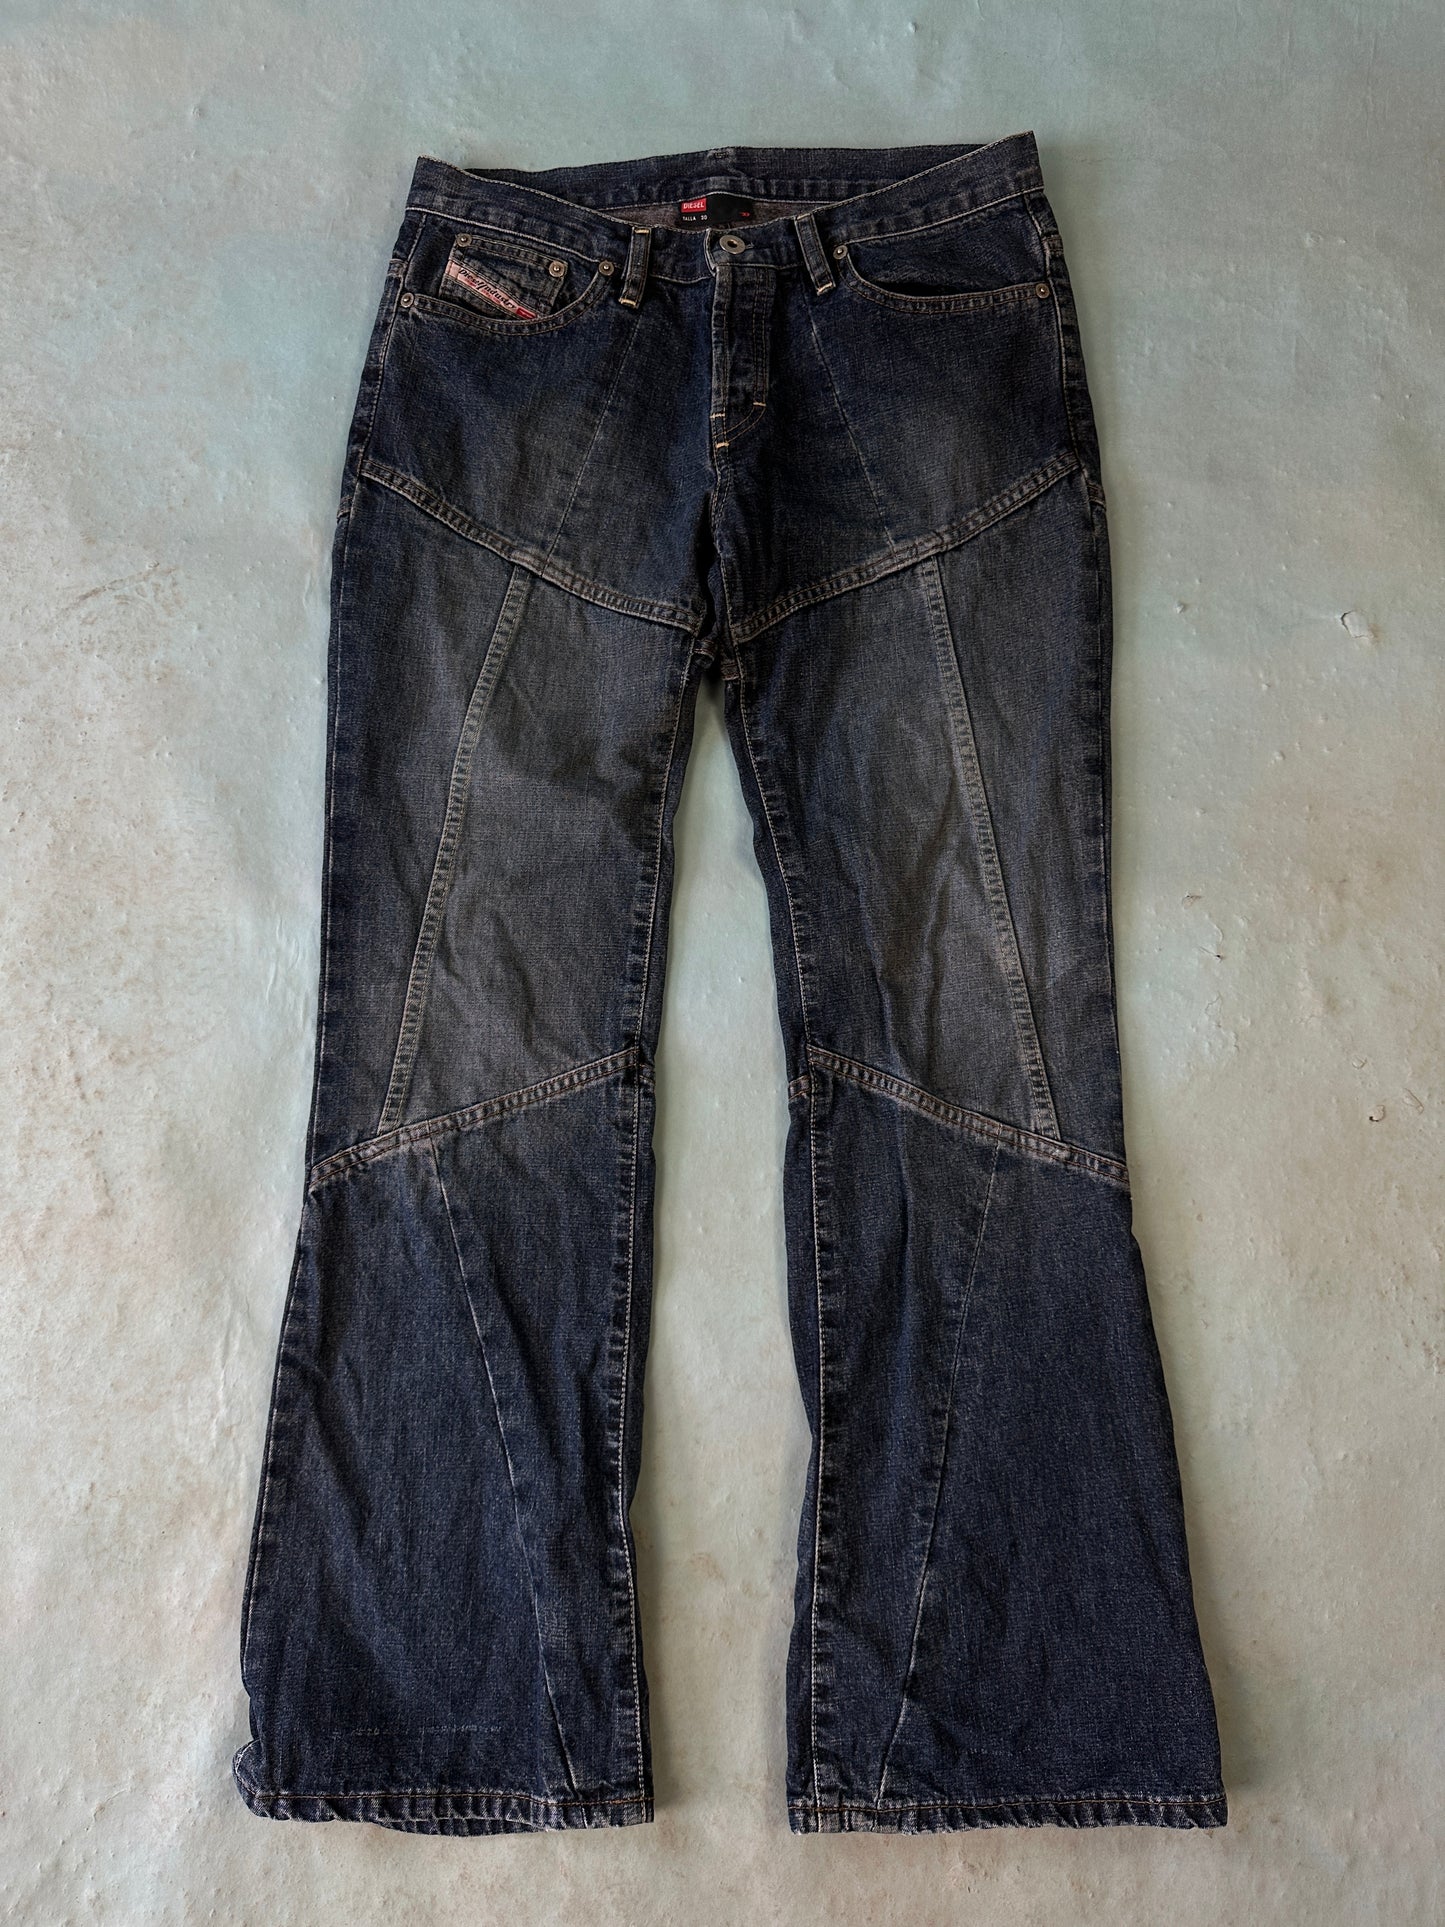 Diesel Flair Vintage Jeans - 30